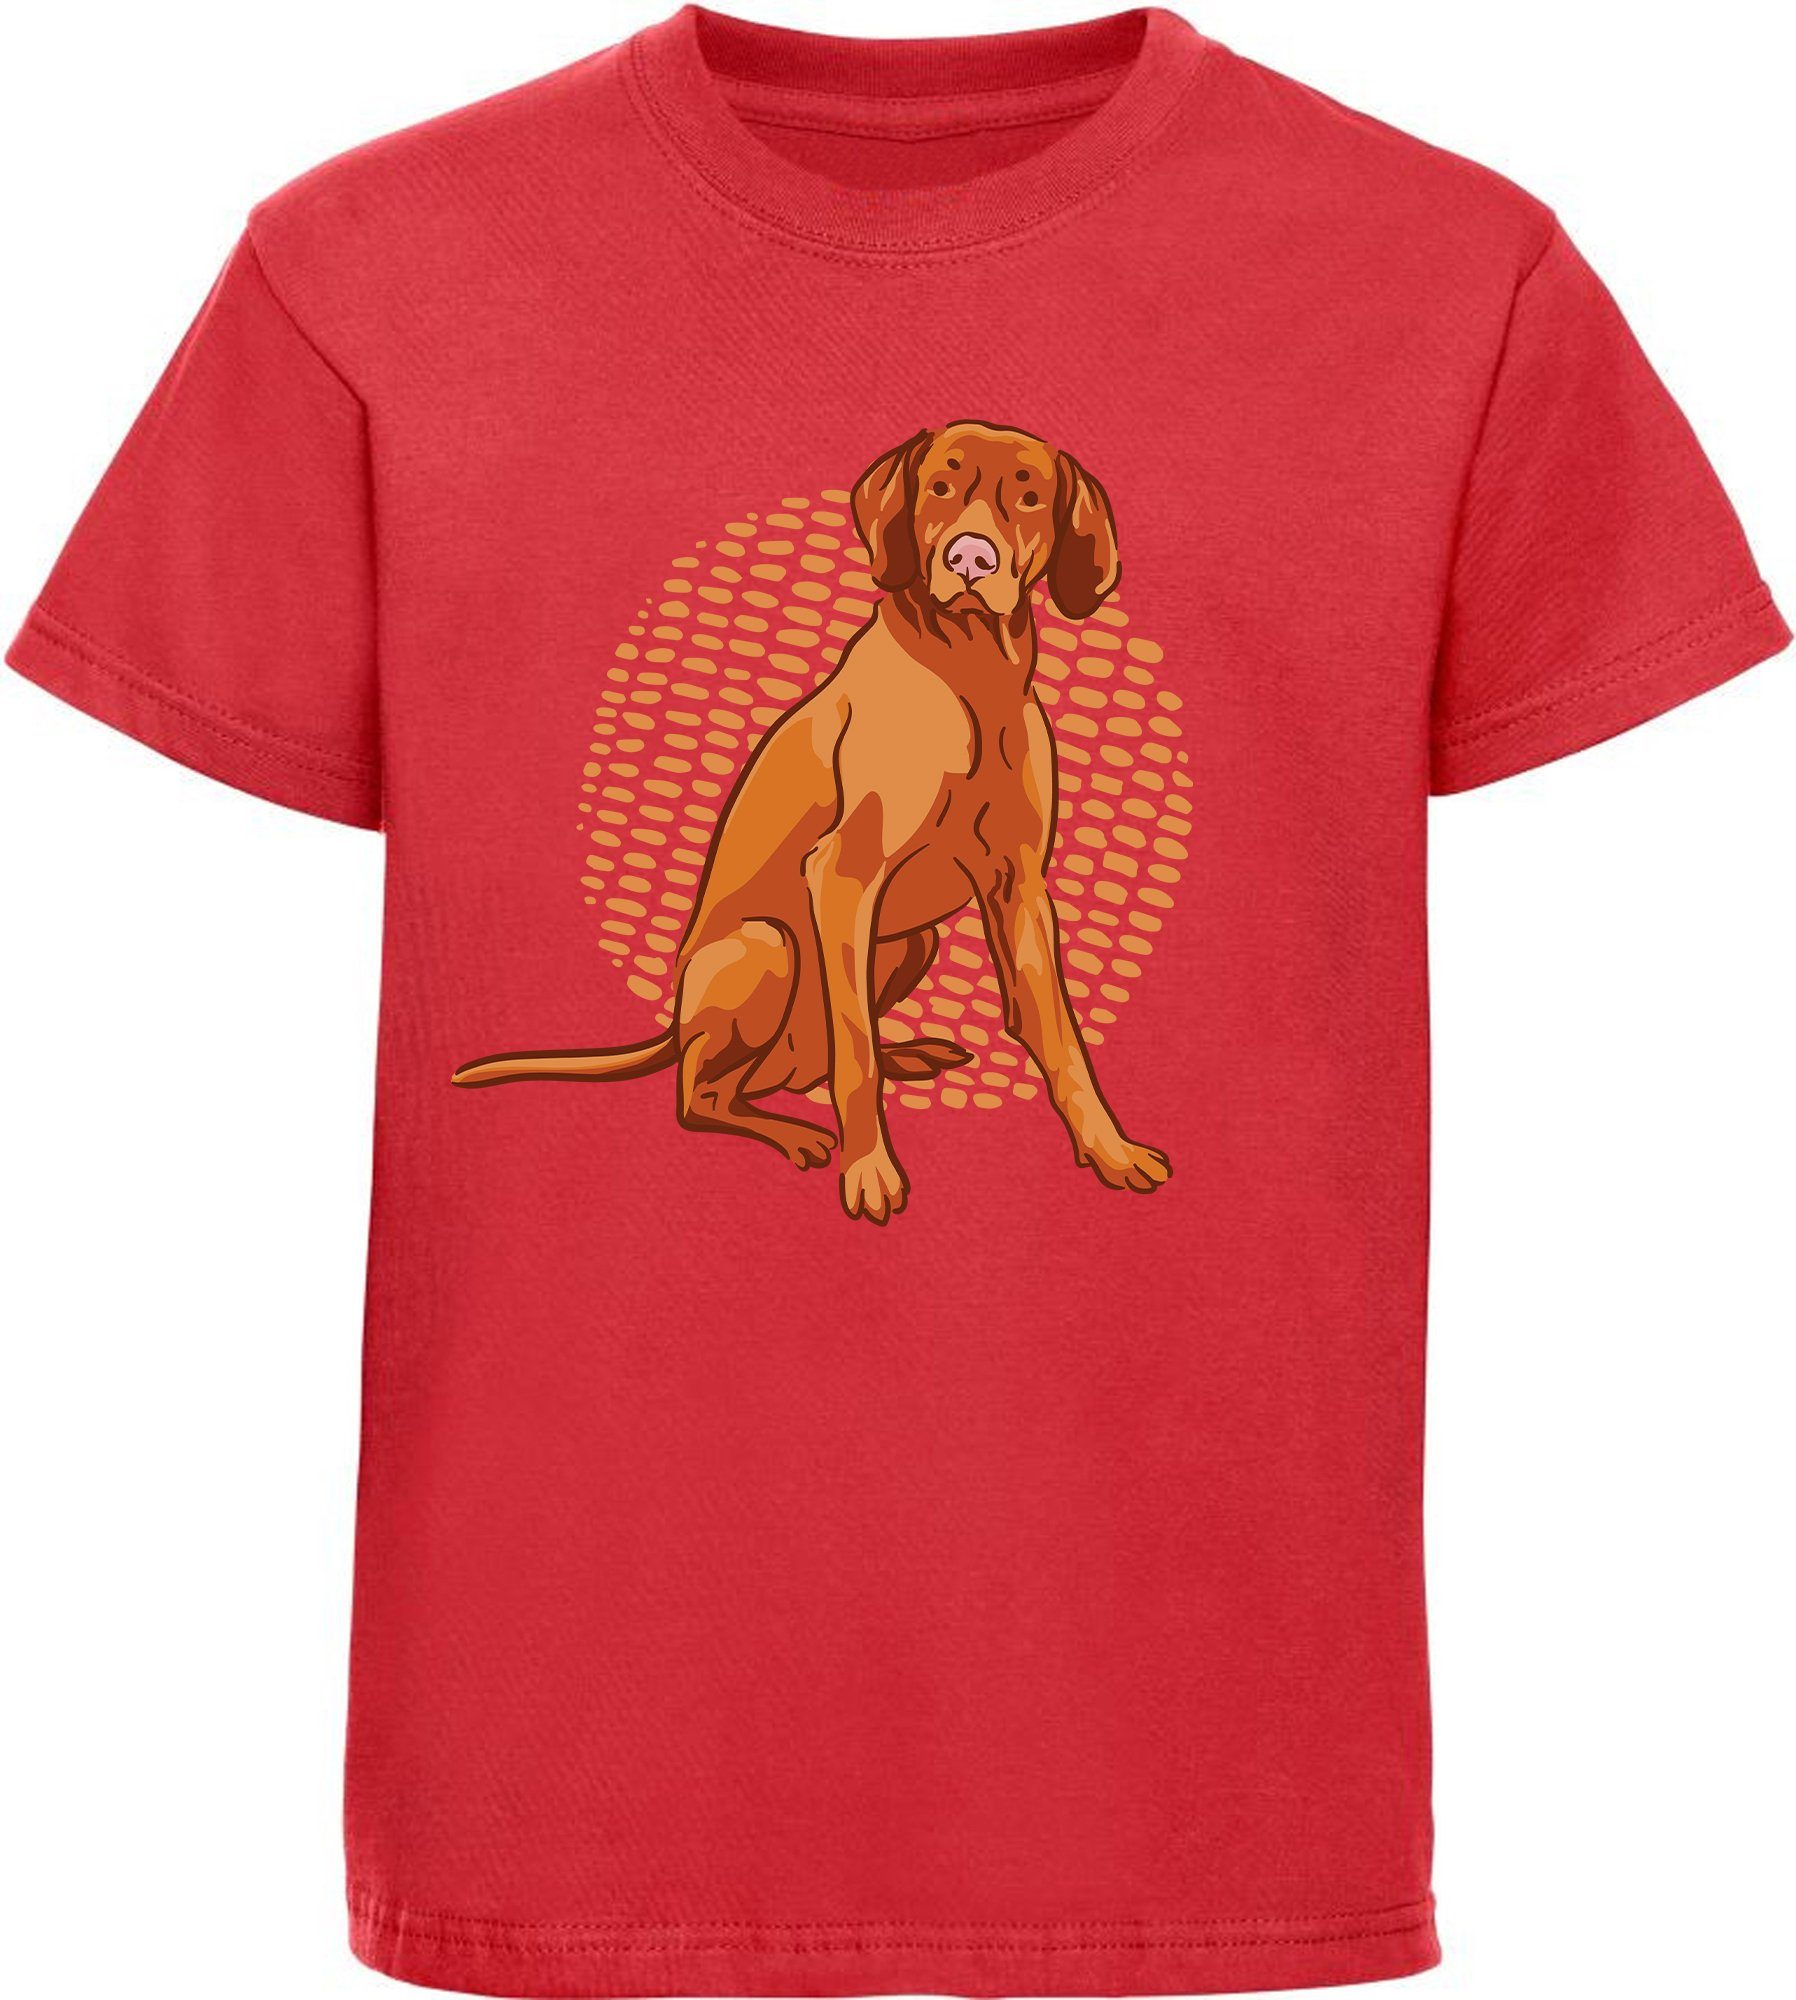 MyDesign24 T-Shirt Kinder Hunde Print Shirt bedruckt - Sitzender brauner Hund Baumwollshirt mit Aufdruck, i257 rot